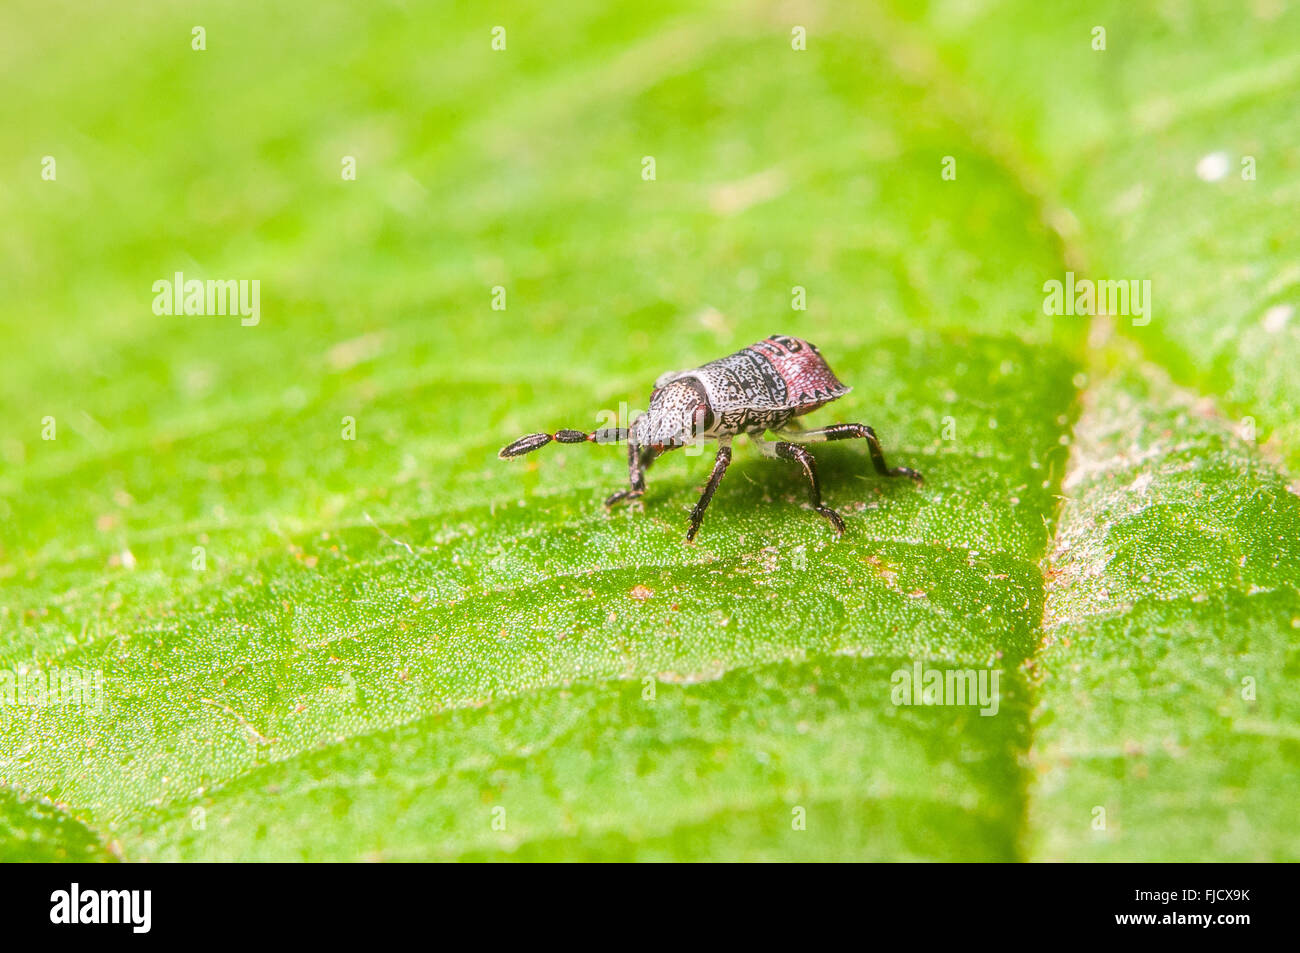 Early instar Stinkbug (Chlorochroa sp.) on a leaf. Washington, United States. Stock Photo